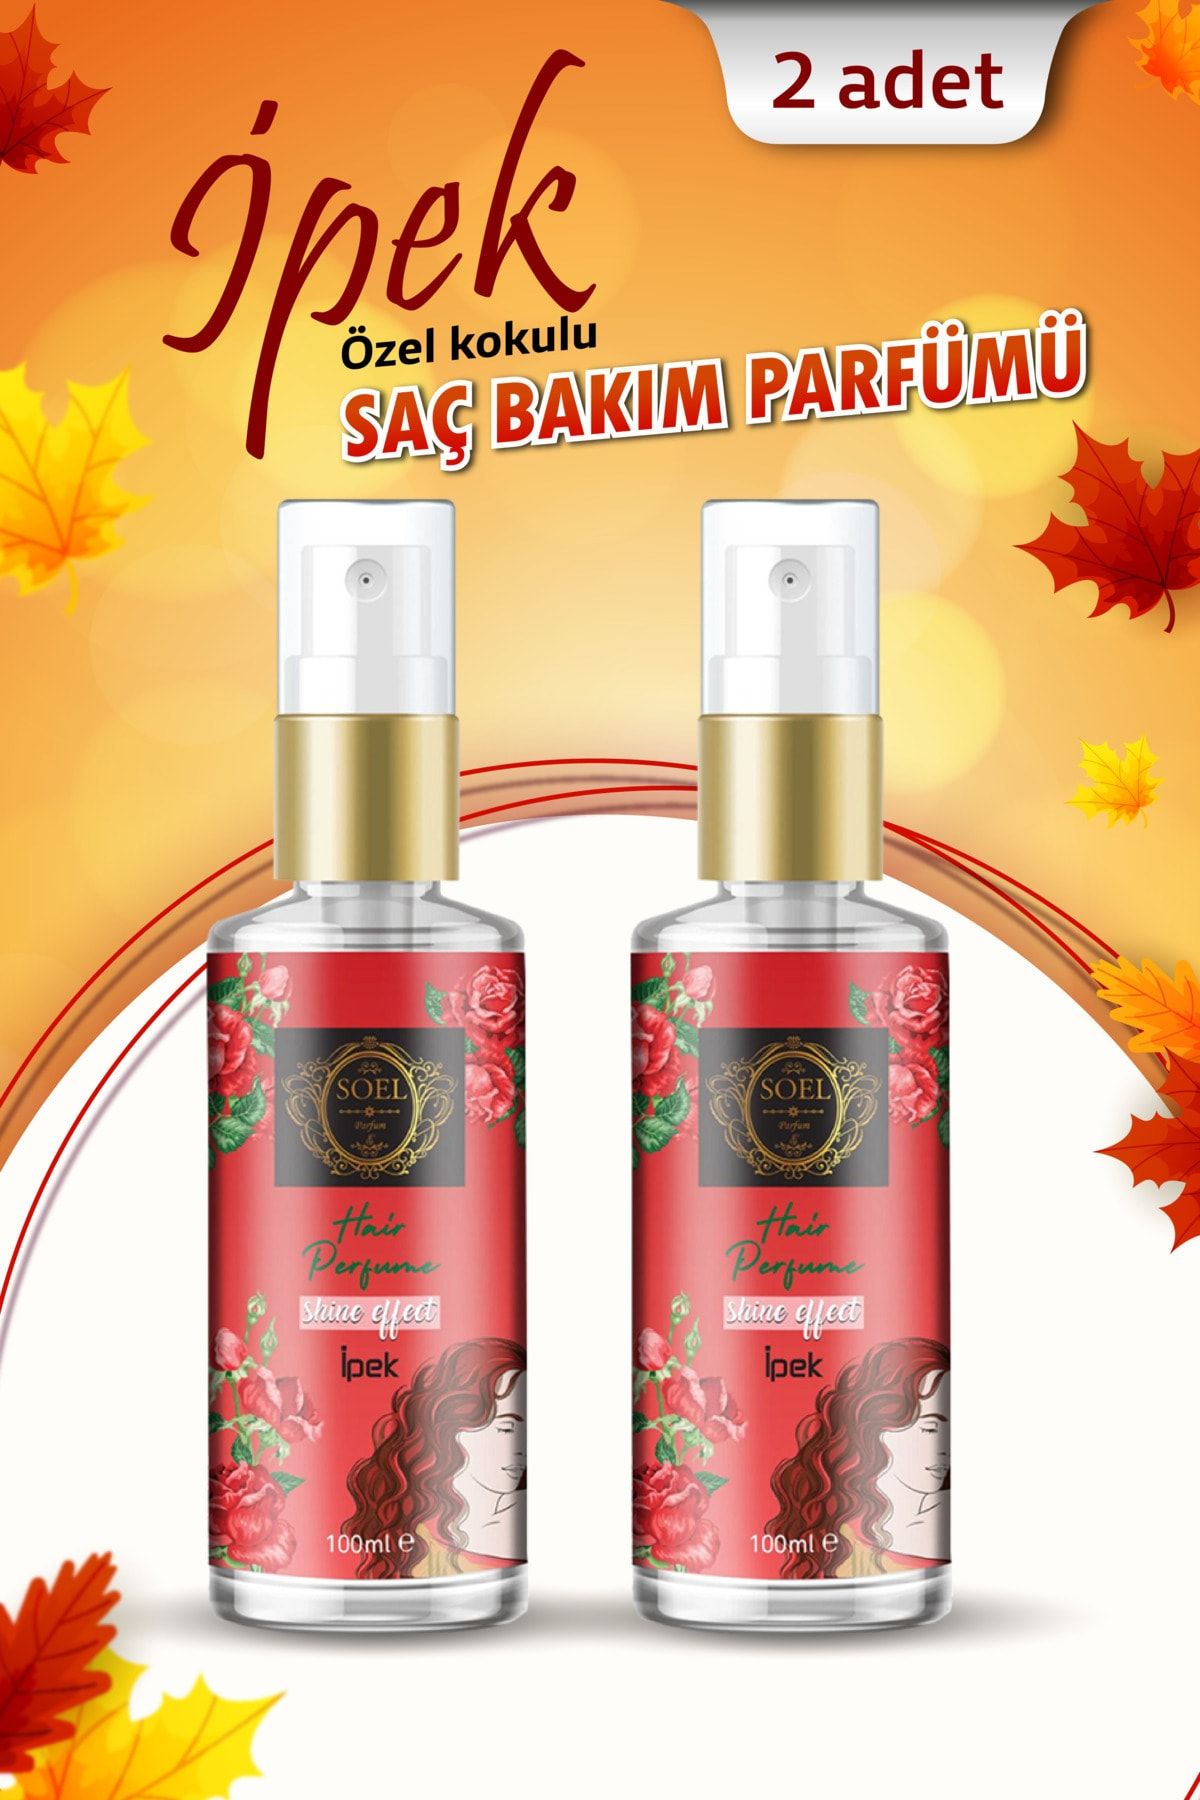 Soel Parfüm Saç Bakım Parfümü- 2 Adet Ipek Parfüm Kokulu 100 ml